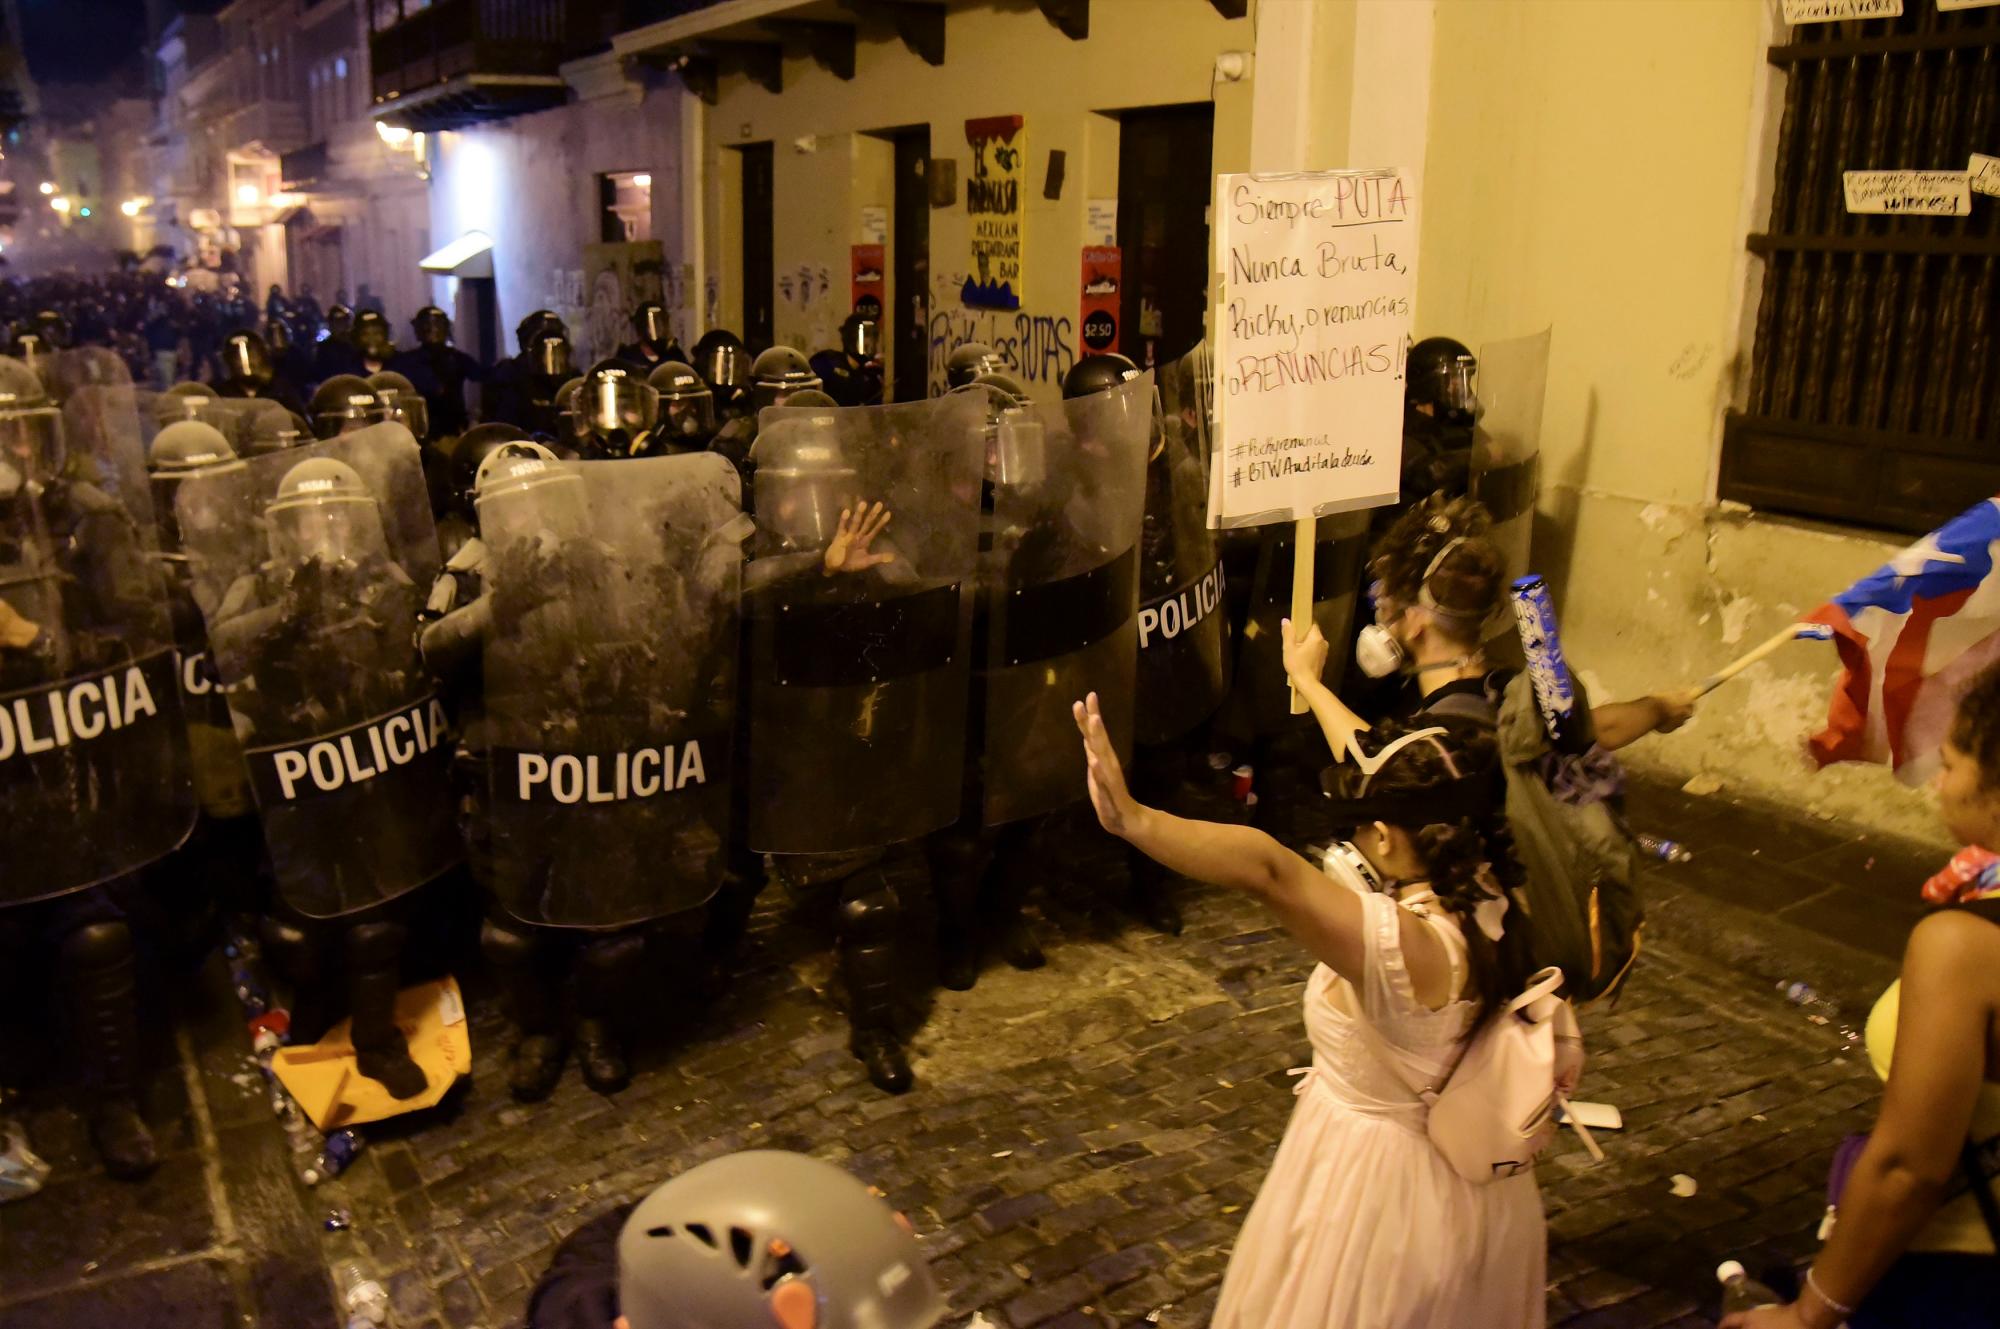 Los manifestantes reaccionan frente a la policía durante los enfrentamientos en San Juan, Puerto Rico, el miércoles 17 de julio de 2019.